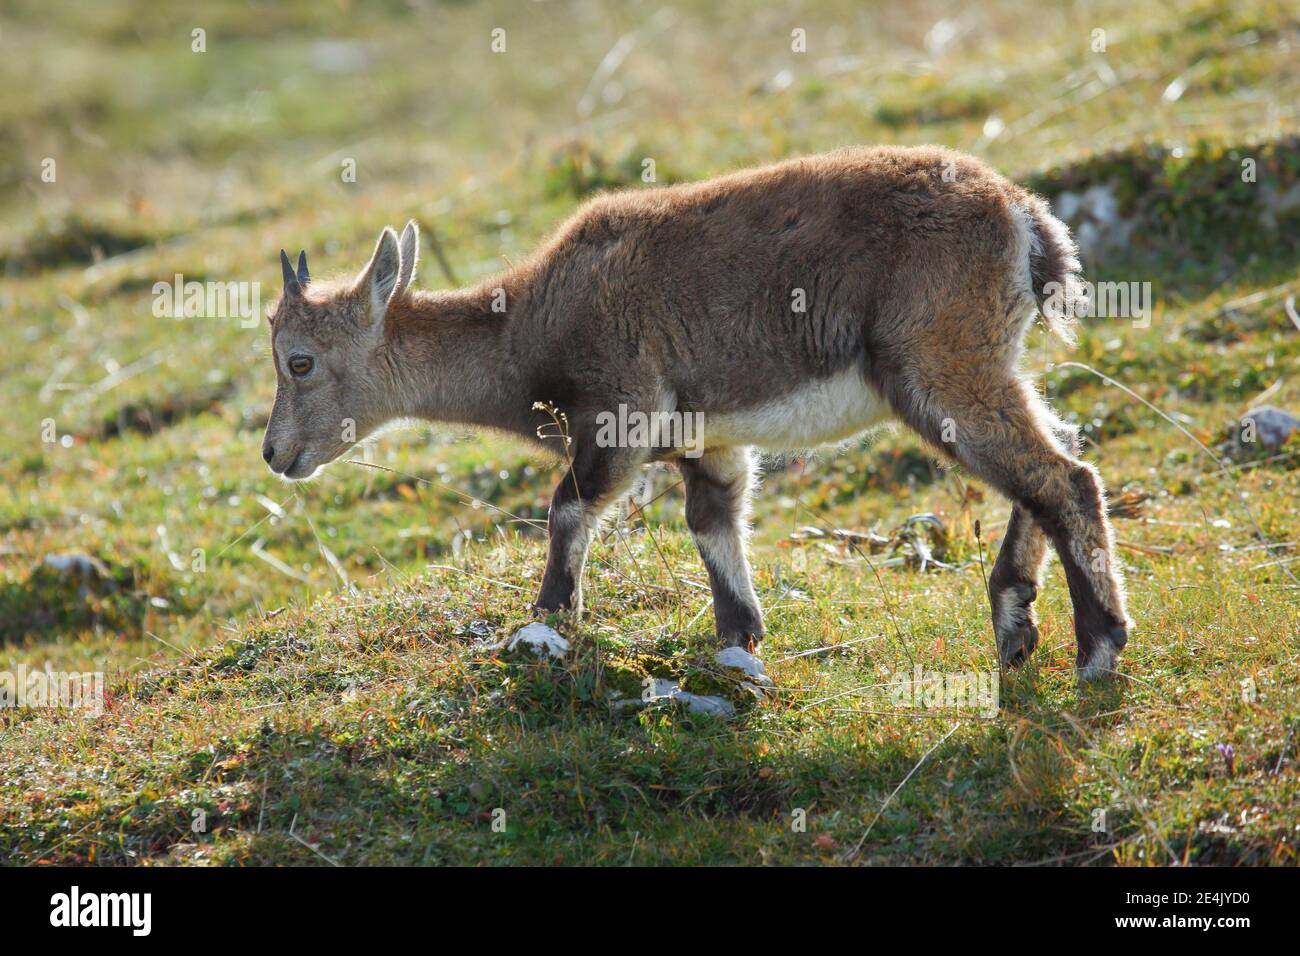 Stonecrop (Capra ibex), Ibex, Switzerland Stock Photo